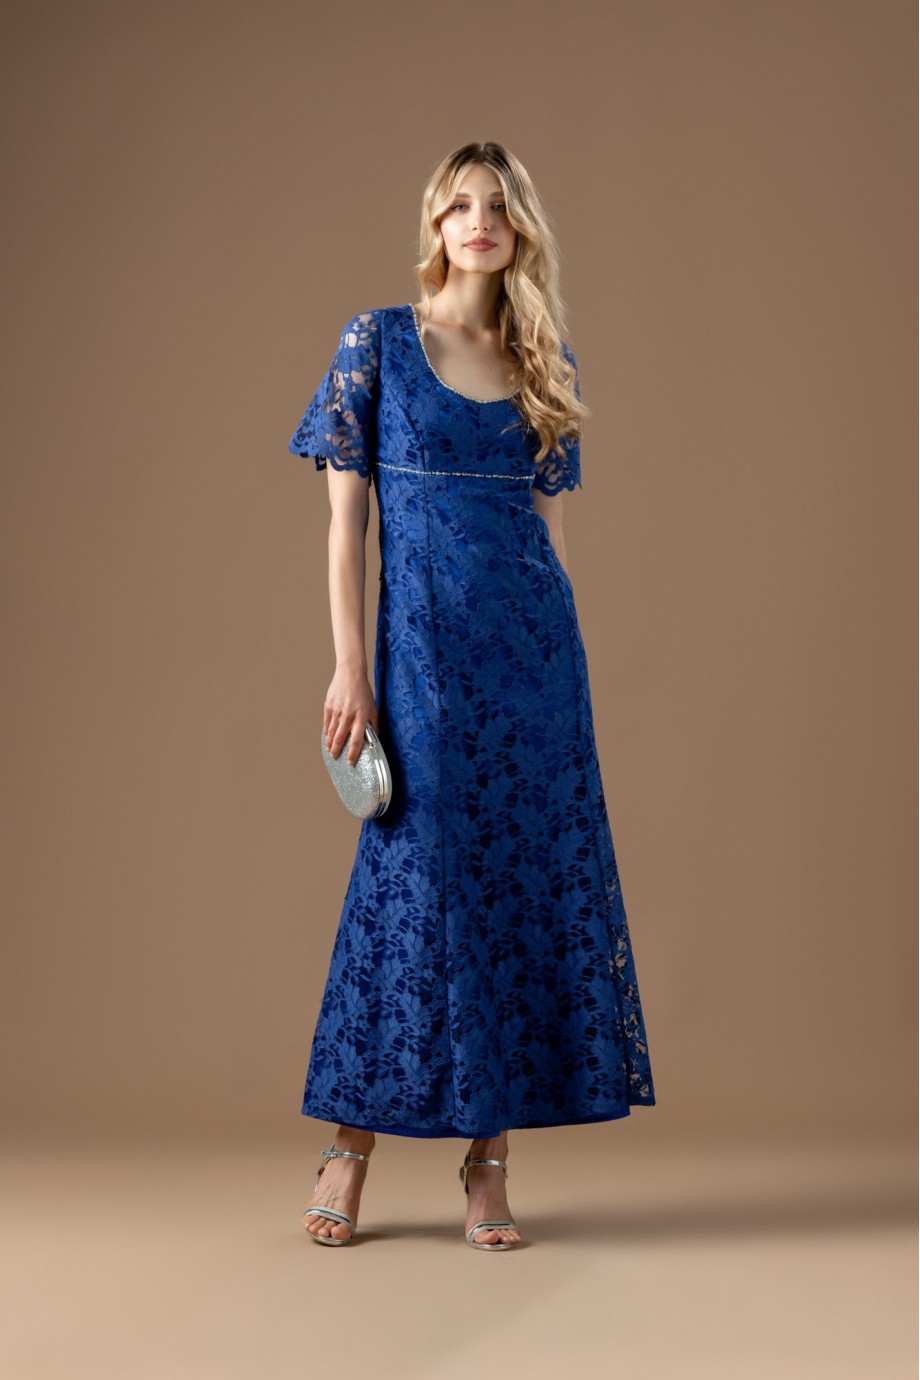 Μακρύ μπλε ηλεκτρικ φόρεμα από δαντέλα με κέντημα